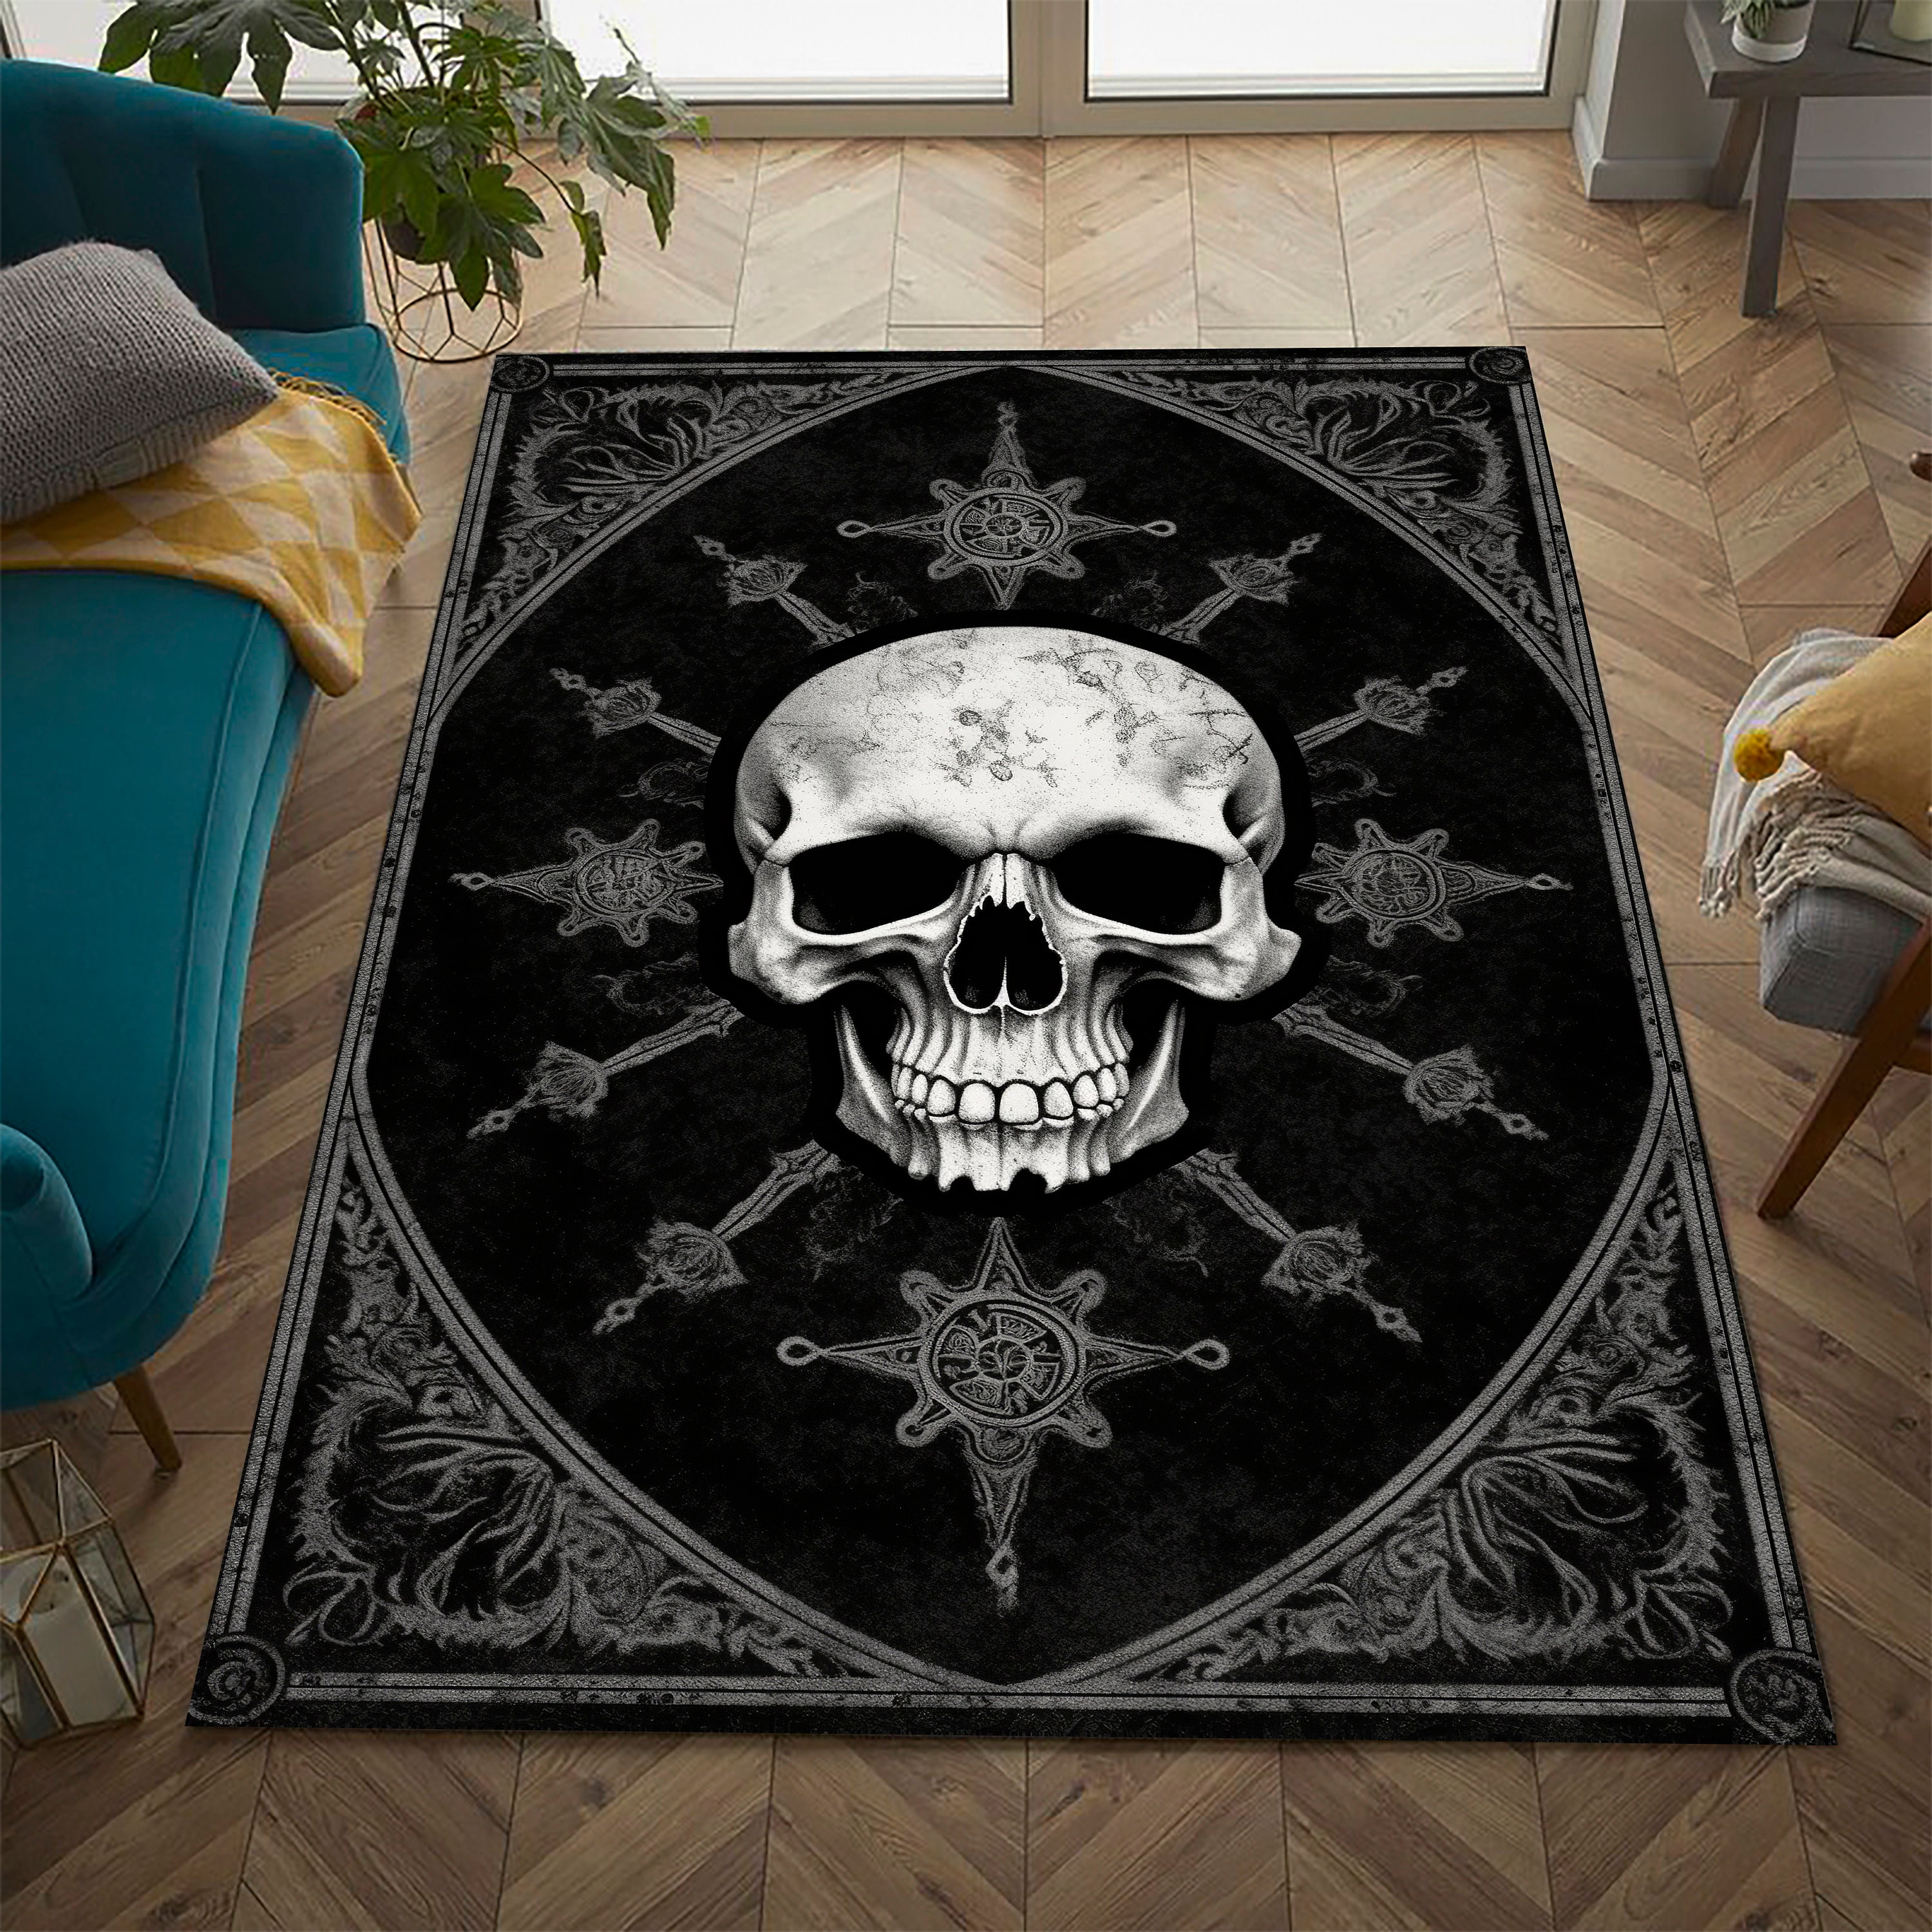 Discover Skull rug, skeleton rug, gothic rug, skull decor, sceleton decor, gothic ambiance, satan rug, devil skull, momento mori rug, horror rug,